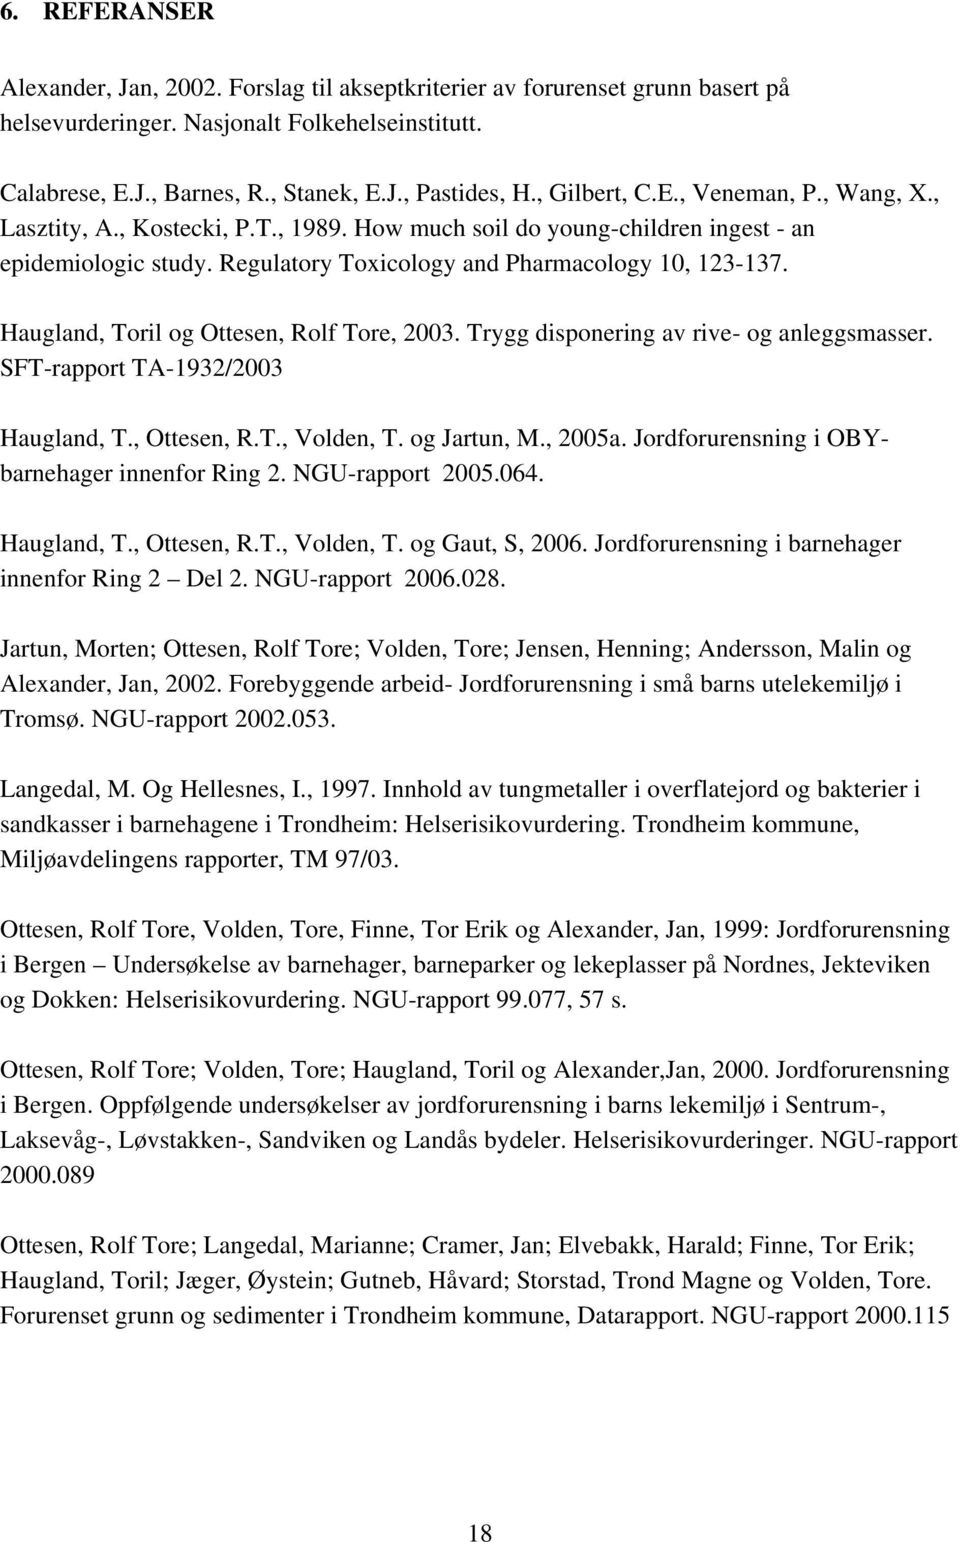 Haugland, Toril og Ottesen, Rolf Tore, 2003. Trygg disponering av rive- og anleggsmasser. SFT-rapport TA-1932/2003 Haugland, T., Ottesen, R.T., Volden, T. og Jartun, M., 2005a.